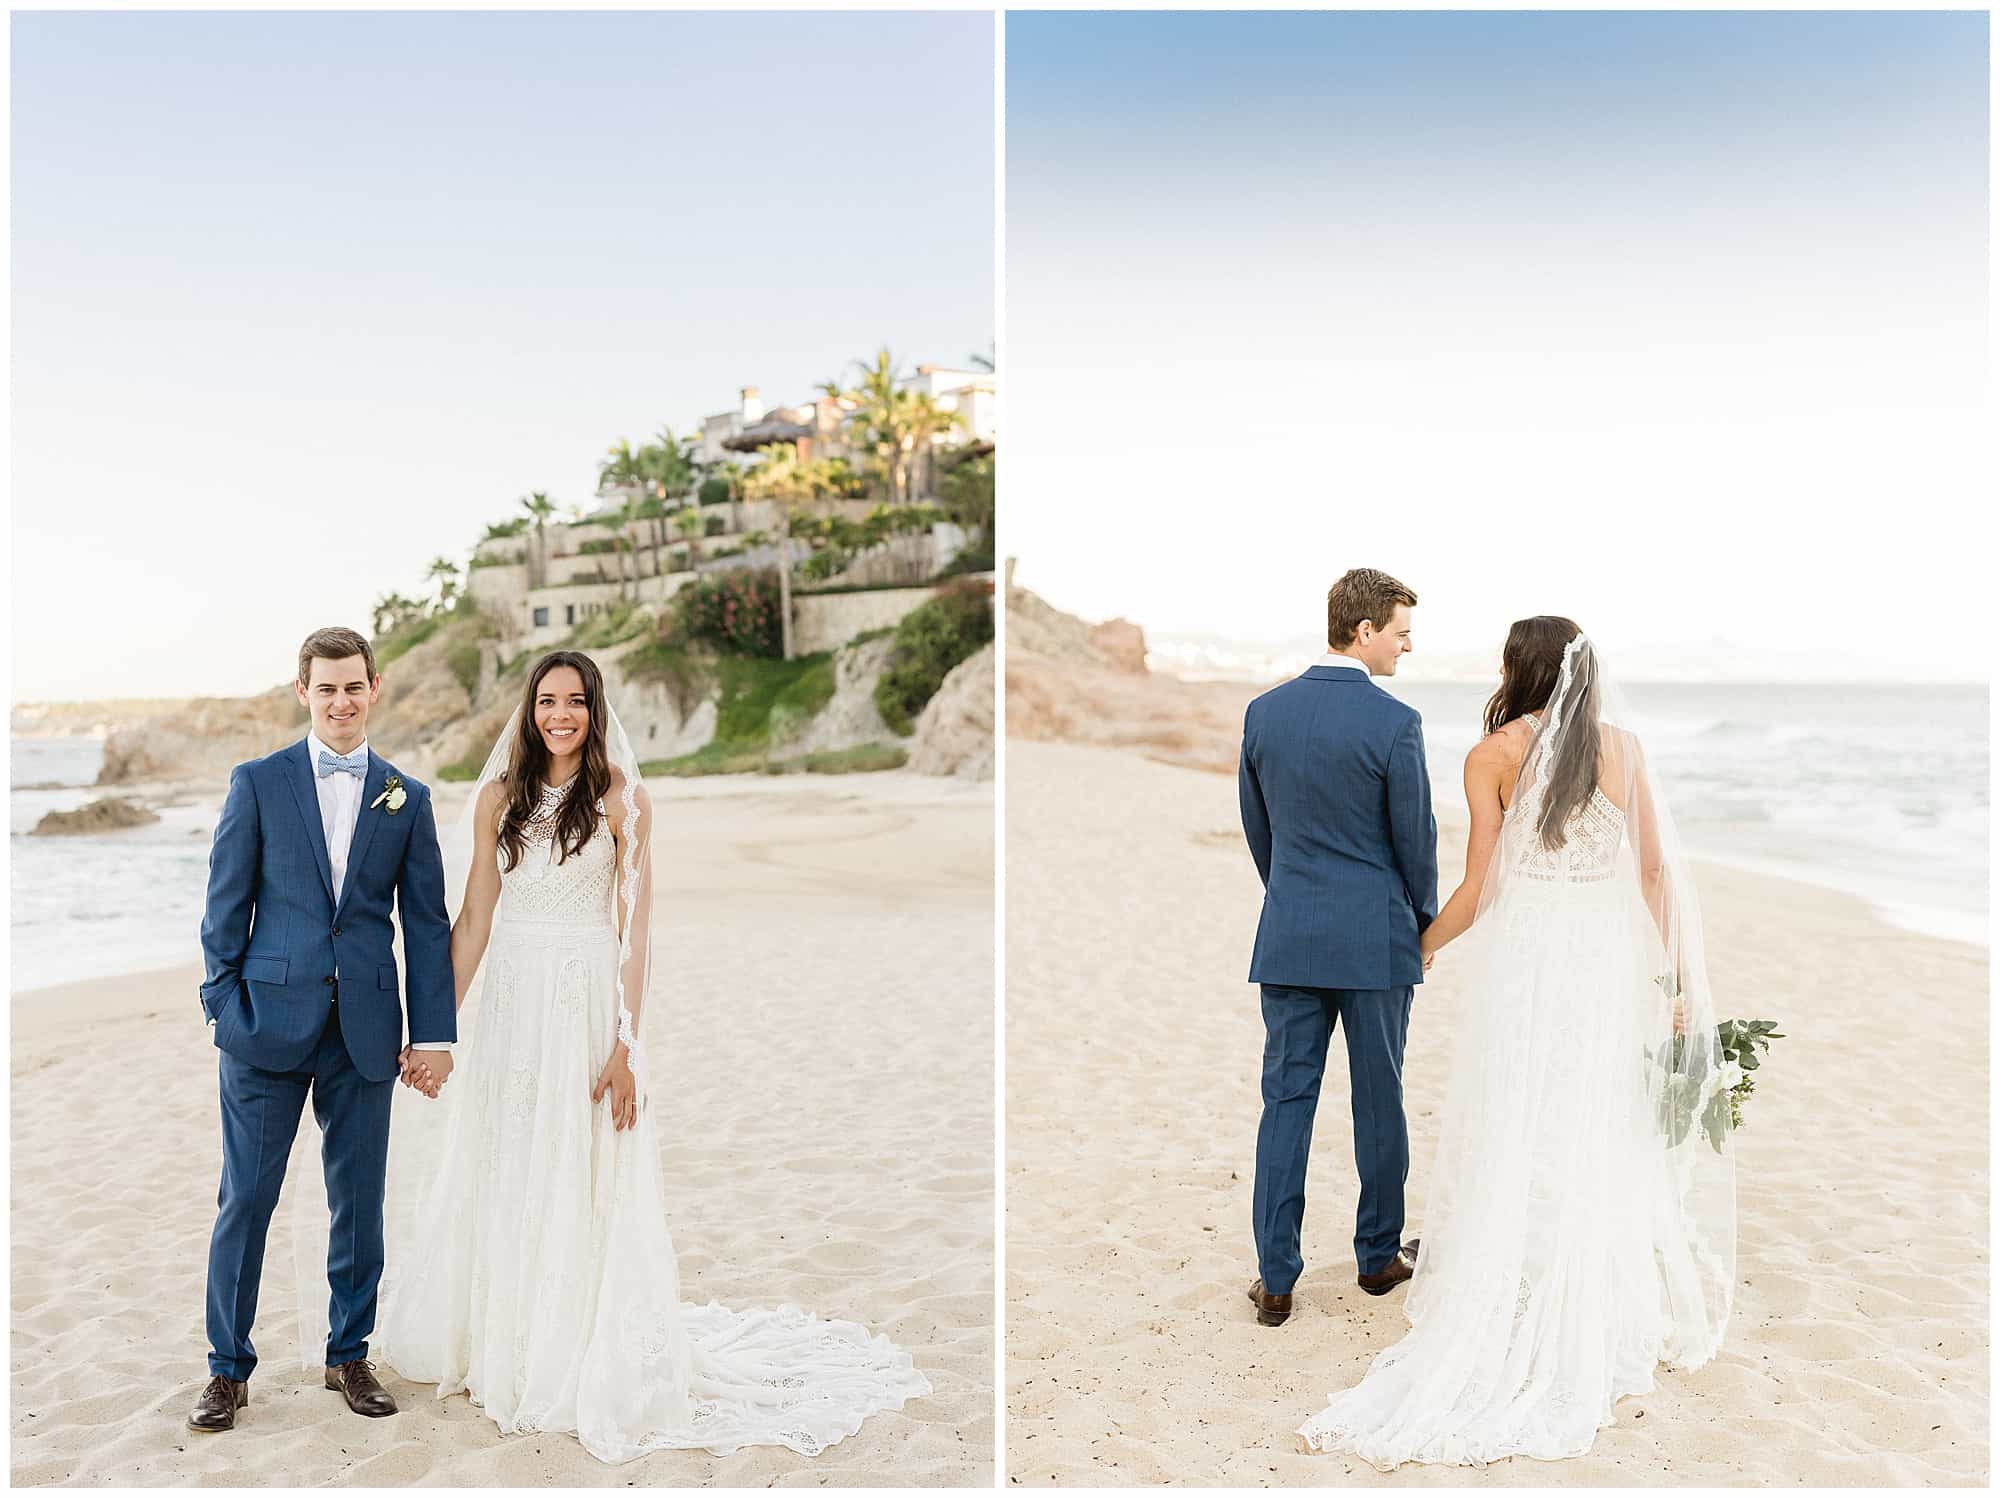 ?pp route=%2Fimage resize&path=nBnauQjNwEzX5hGchJ3ZvR3boBXLu92ckJXYoNWay1SYyF2ctIXZoBXYyd2b09Gaw1yZulGZkV2dt8mYhN2L0N3bw1CNzczNtQjMvYDMvkTMwIjf&width=768 - Erin & Stephen: a Cabo Surf Hotel wedding